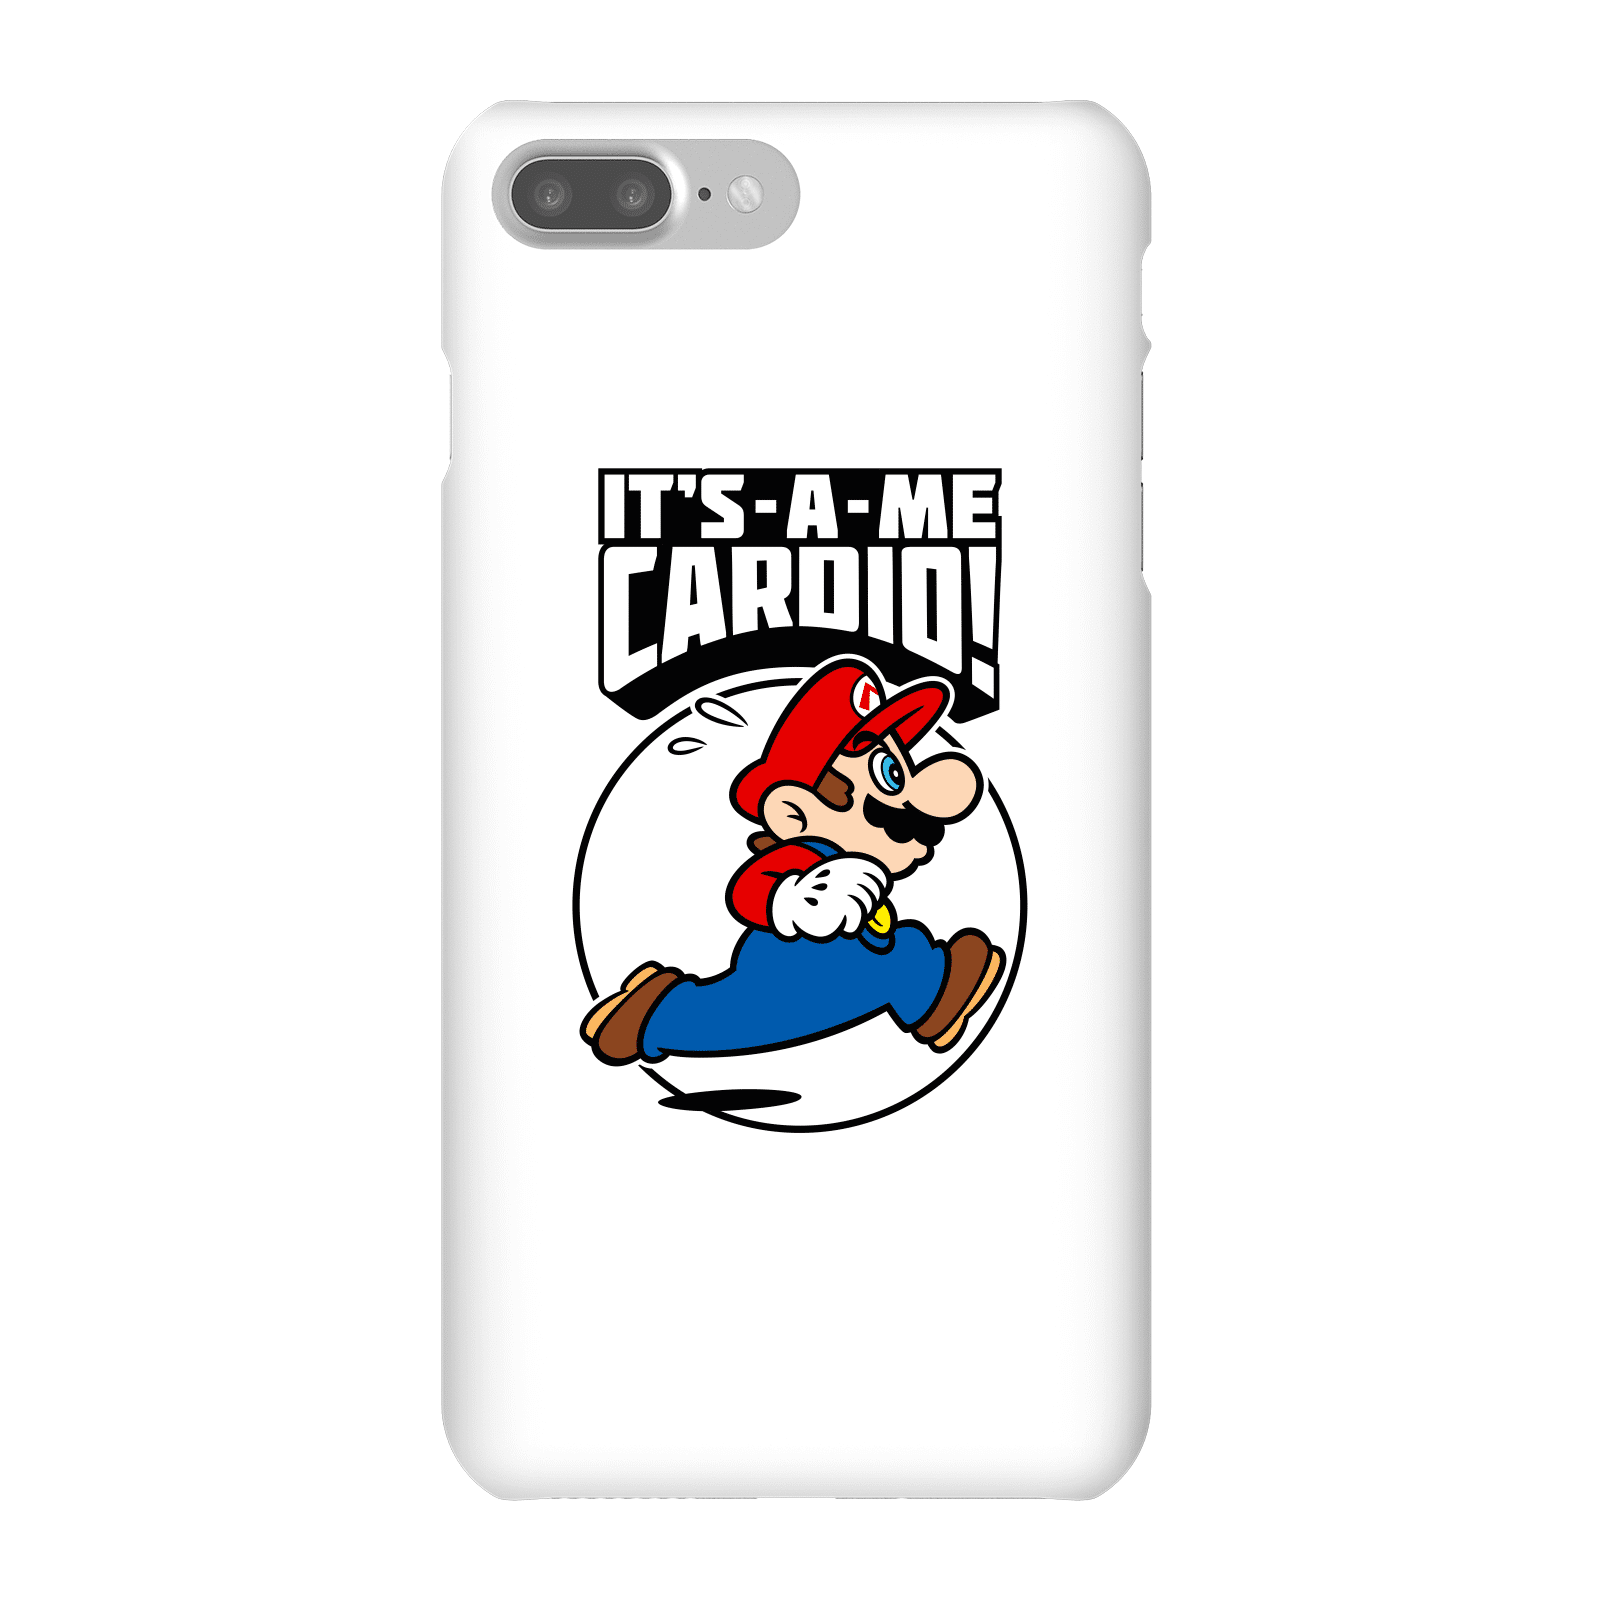 Nintendo Super Mario Cardio Phone Case - iPhone 7 Plus - Snap Case - Matte